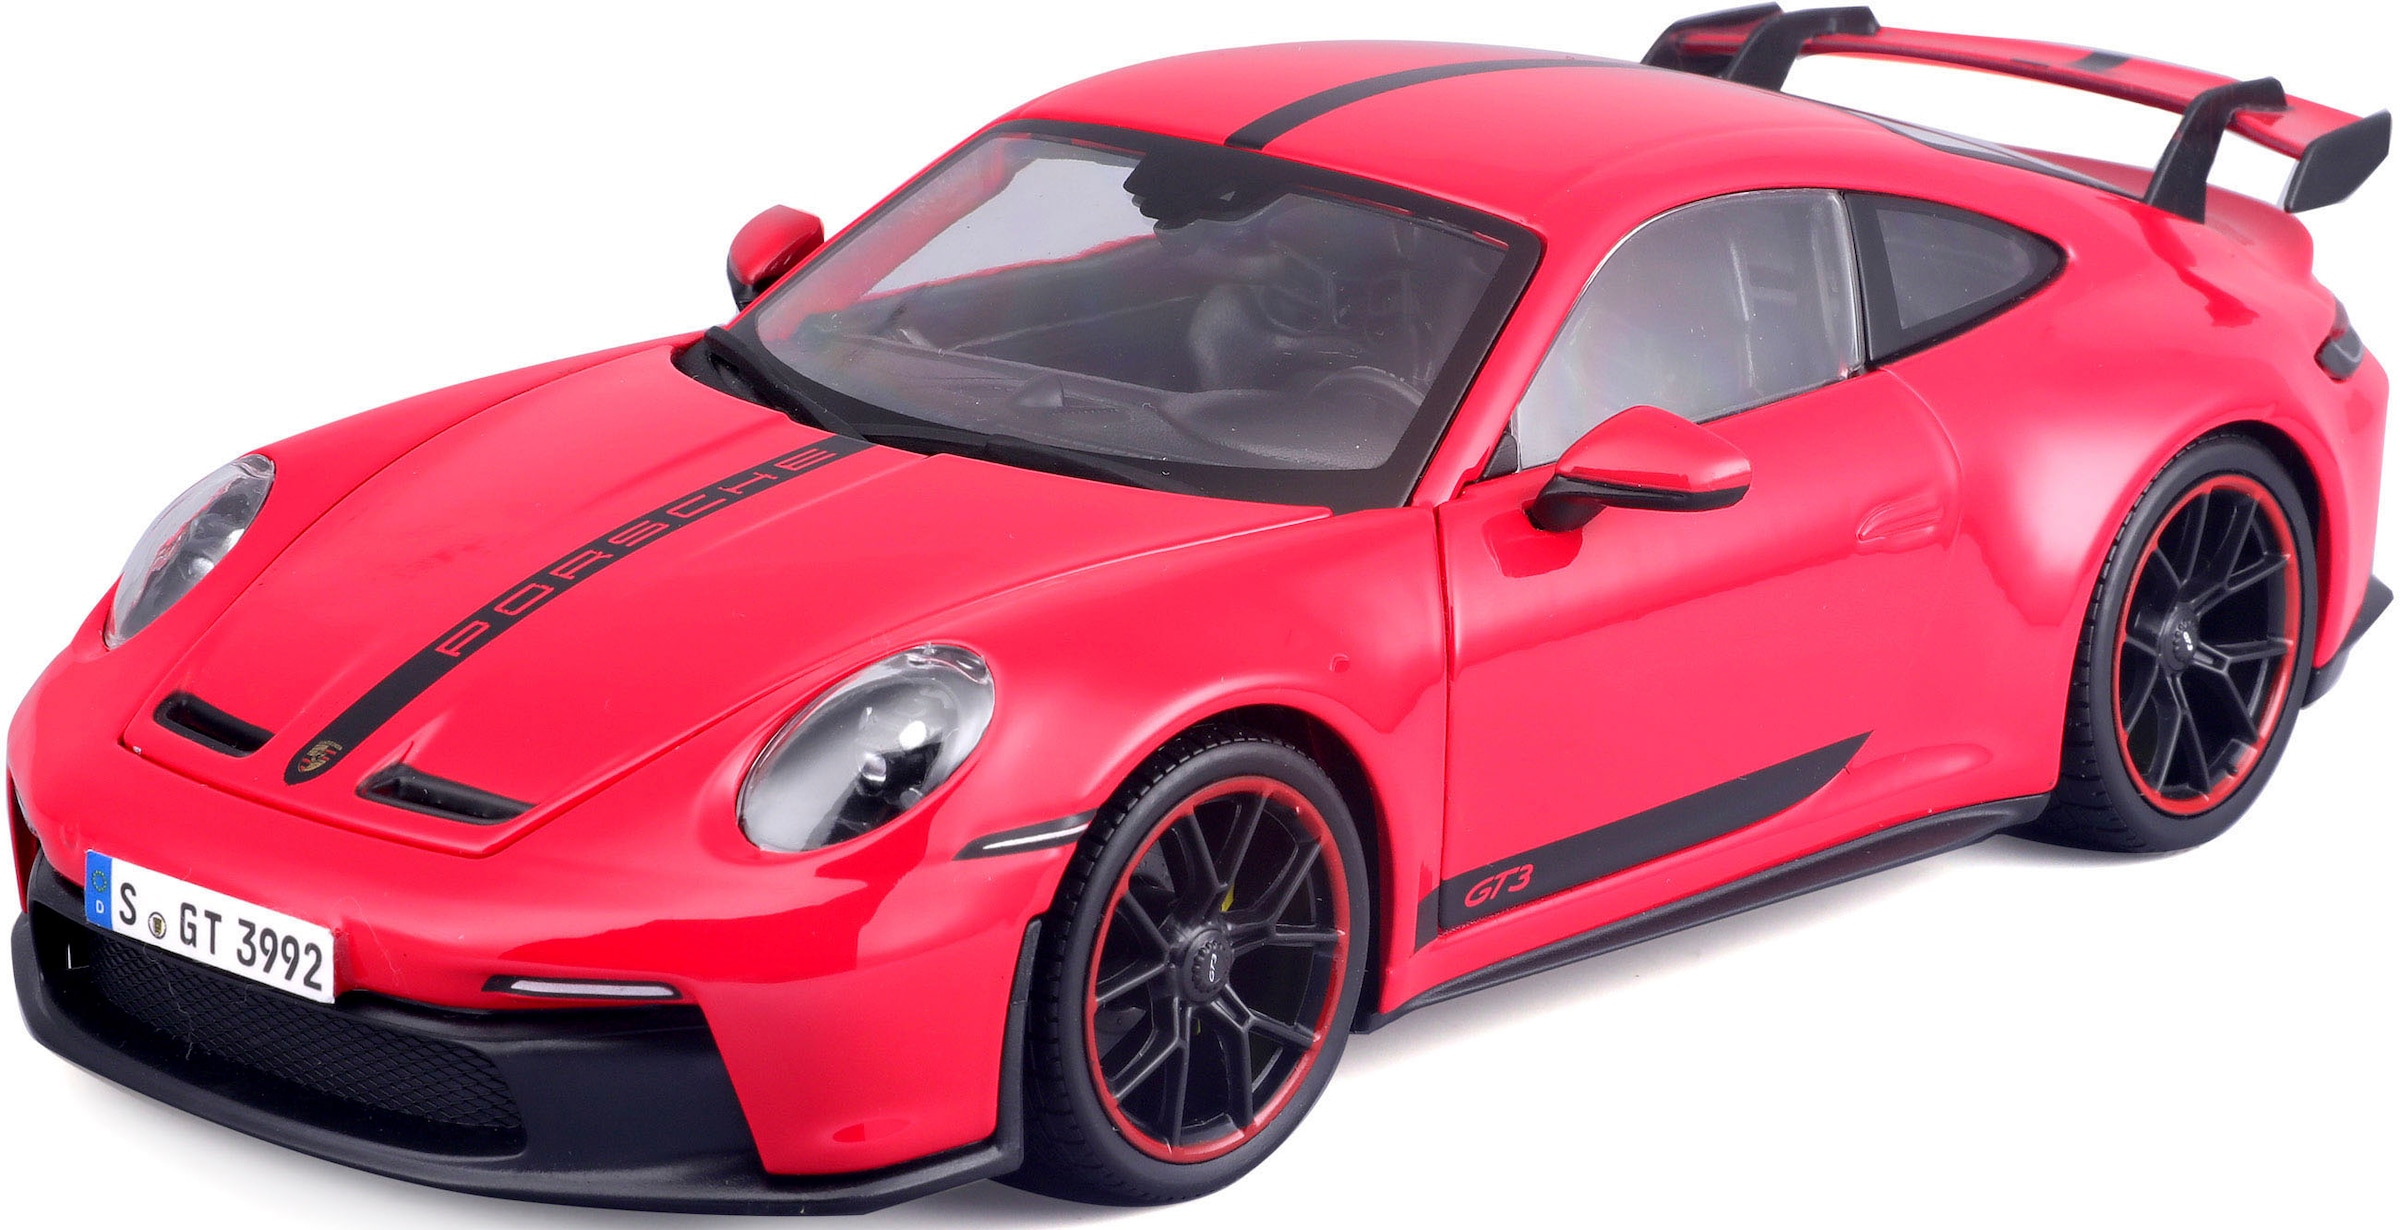 Sammlerauto »Porsche 911 GT3, ´23, rot mit Streifen«, 1:18